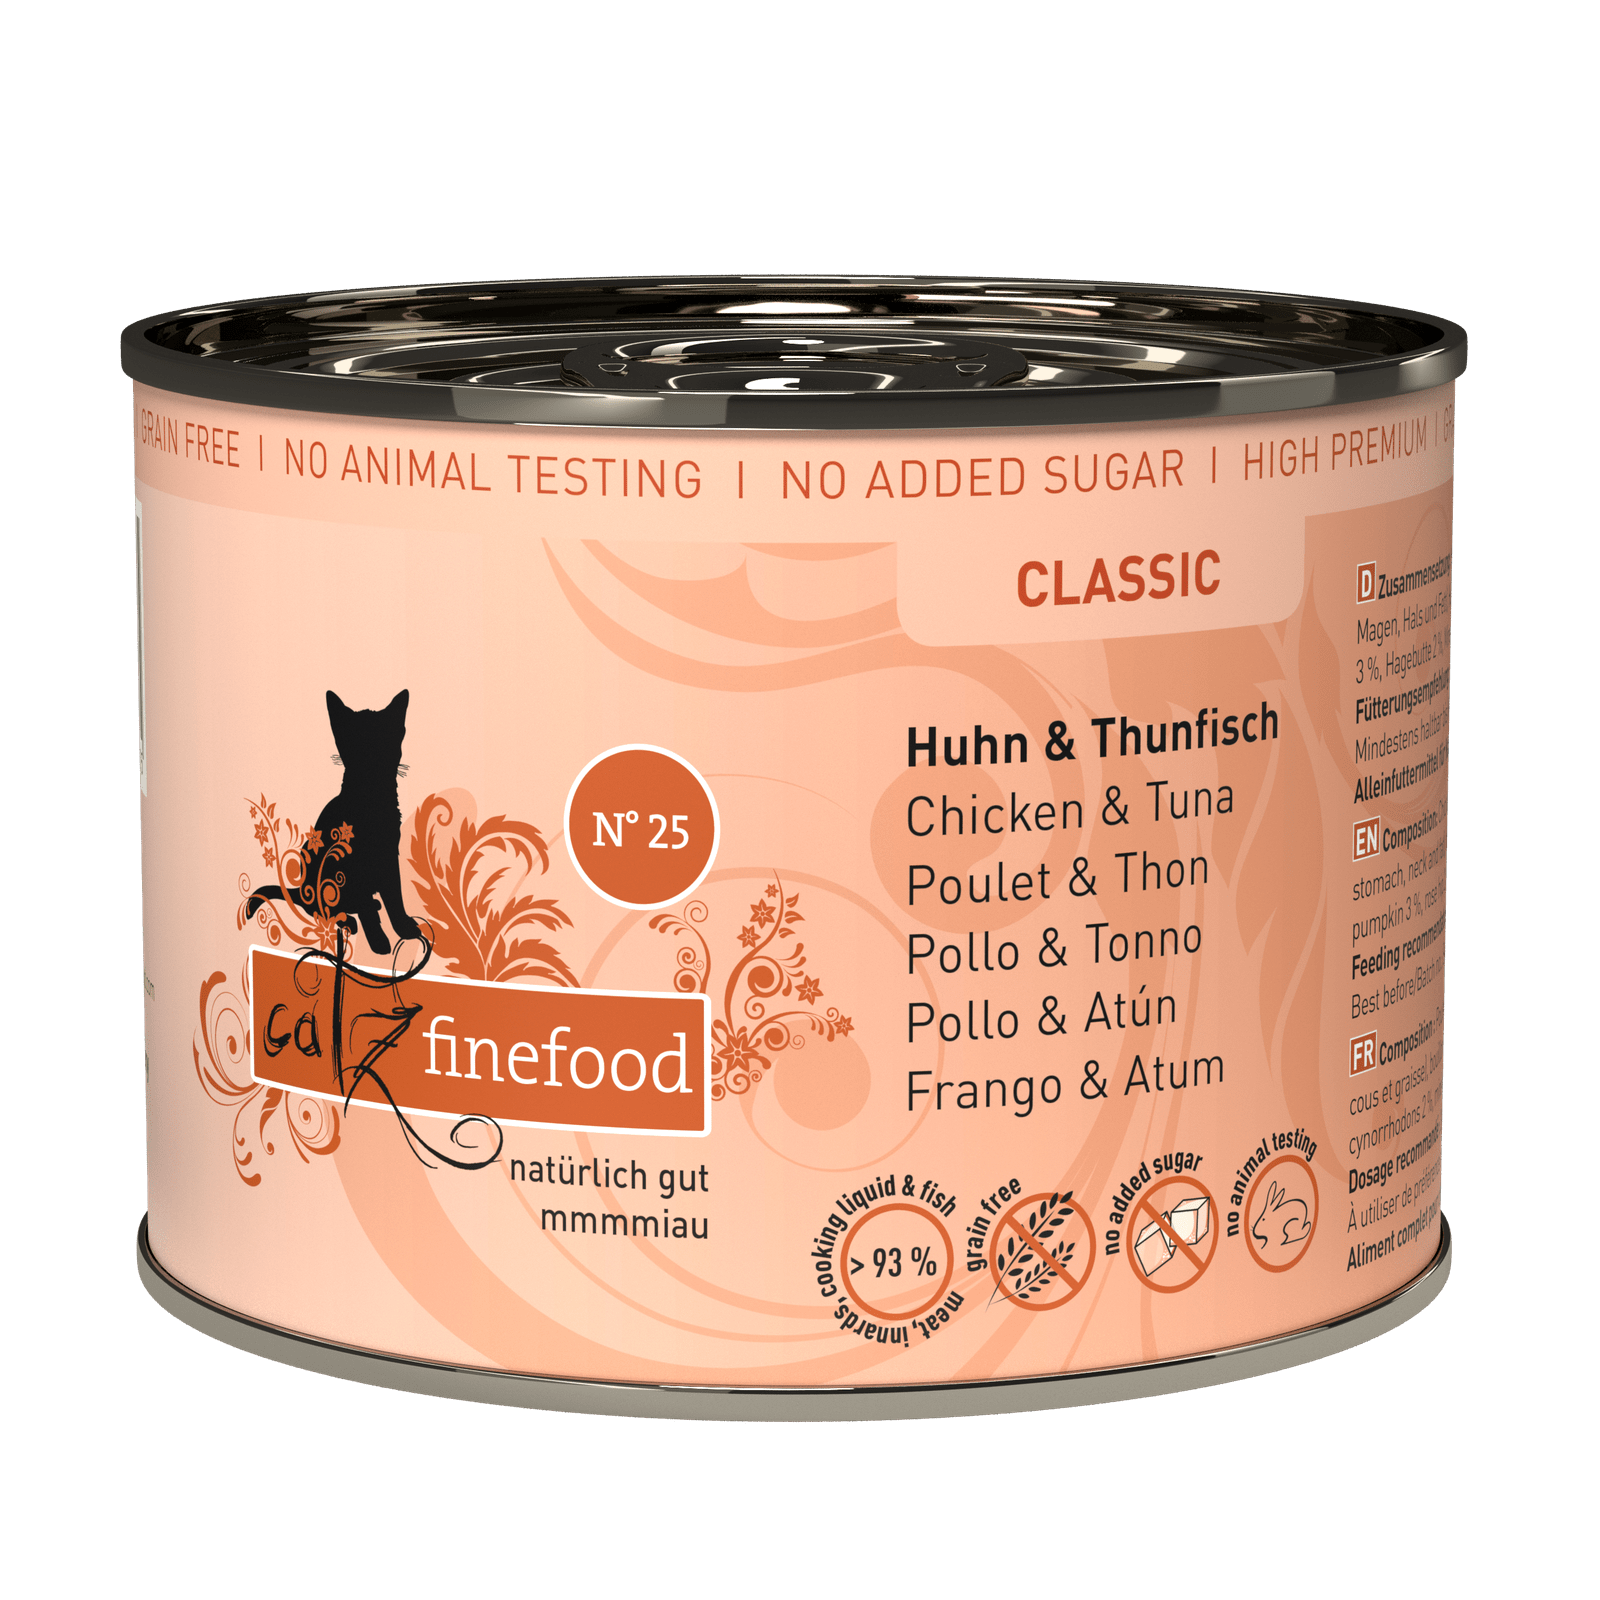 Artikel mit dem Namen Catz finefood No. 25 Huhn &amp; Thunfisch im Shop von zoo.de , dem Onlineshop für nachhaltiges Hundefutter und Katzenfutter.